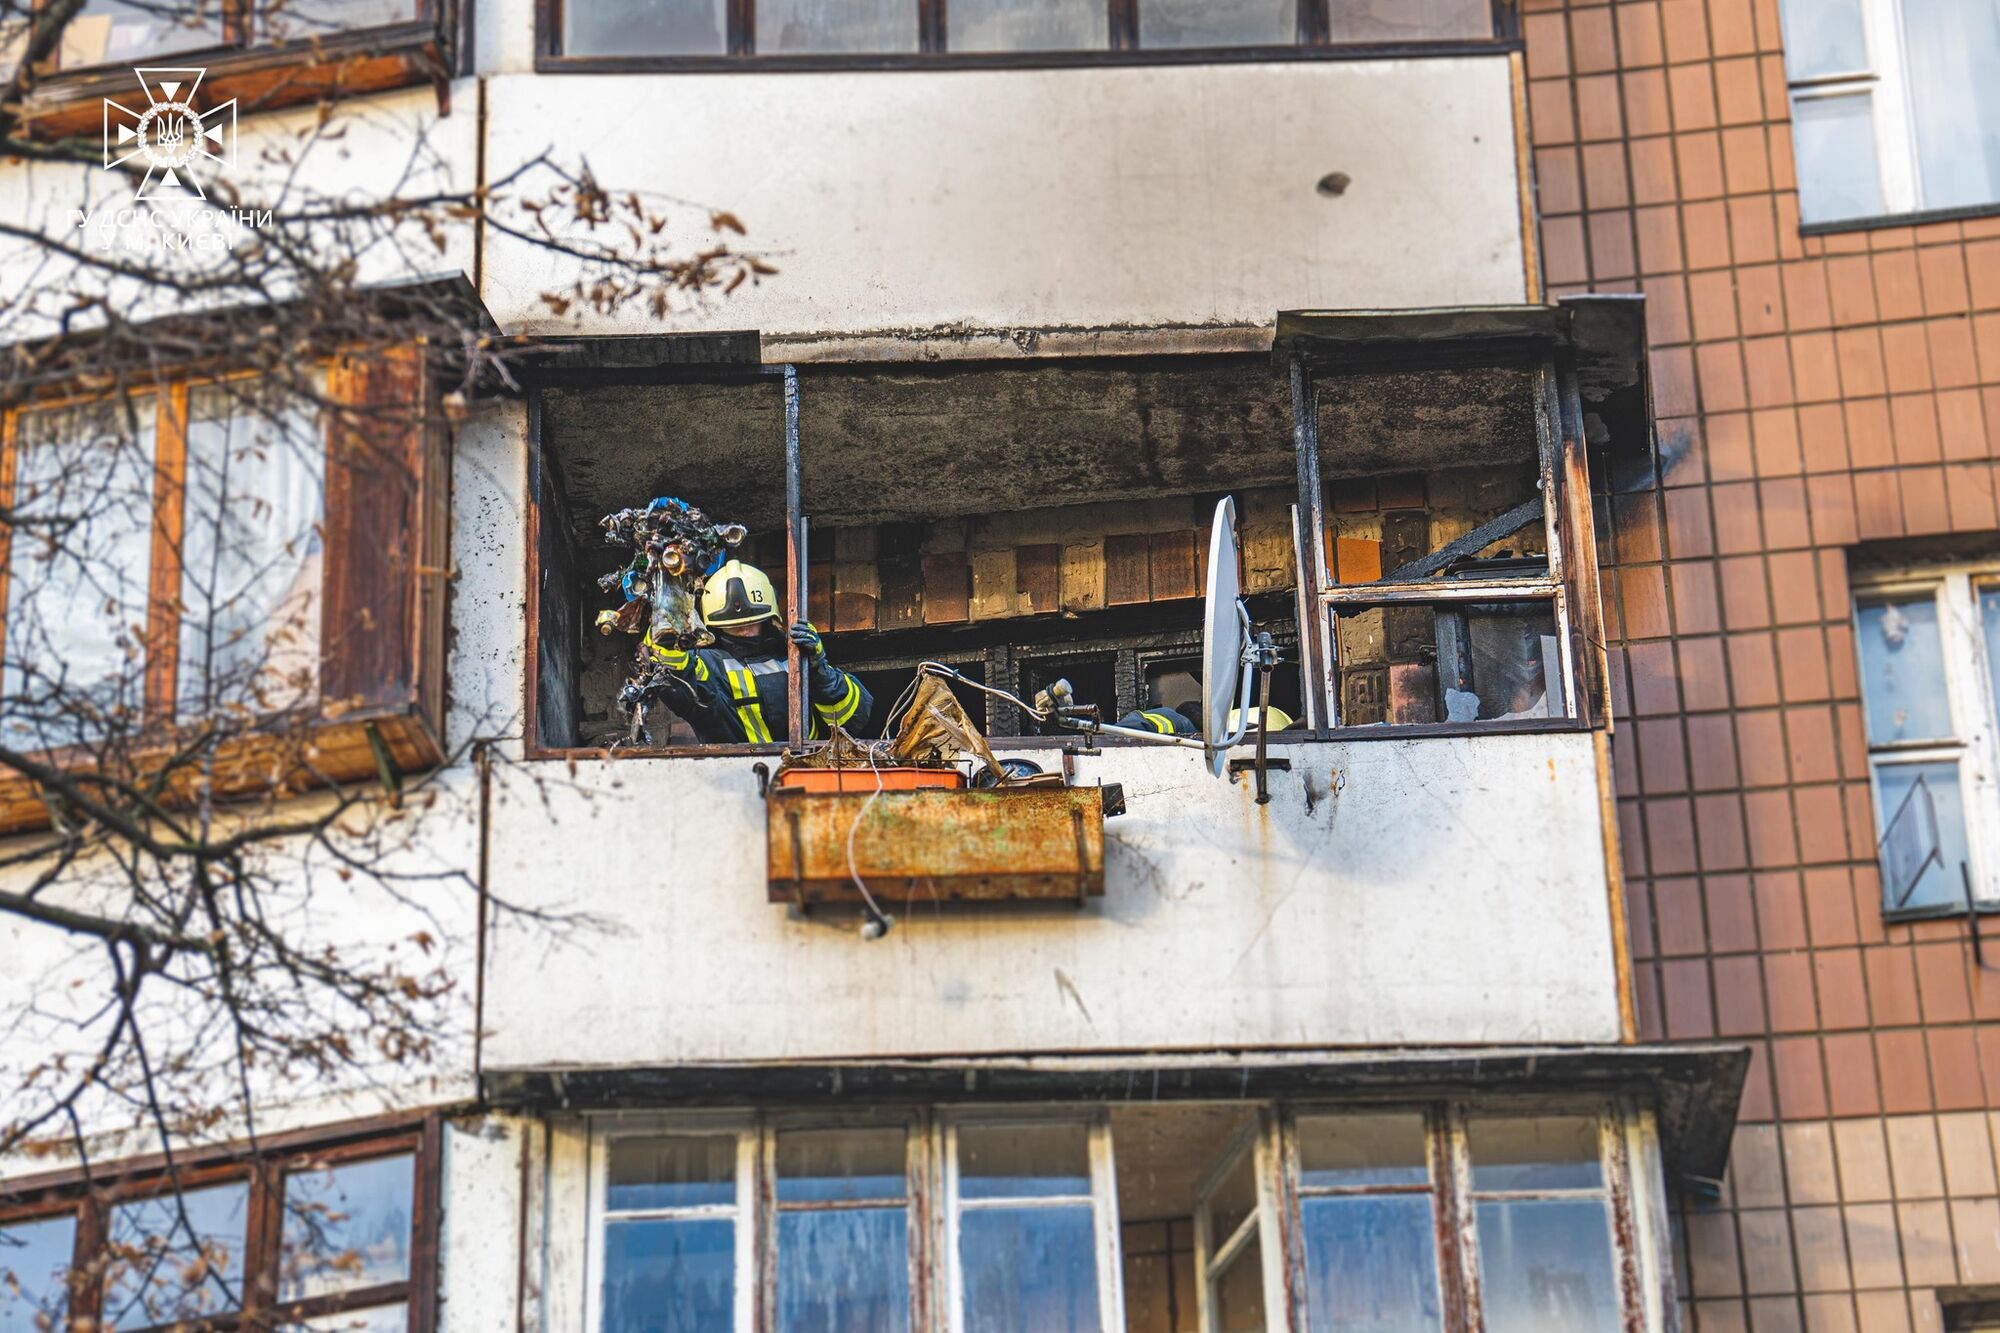 В Киеве бойцы ГСЧС спасли мужчину, который потерял сознание, пытаясь покинуть горящую квартиру. Фото